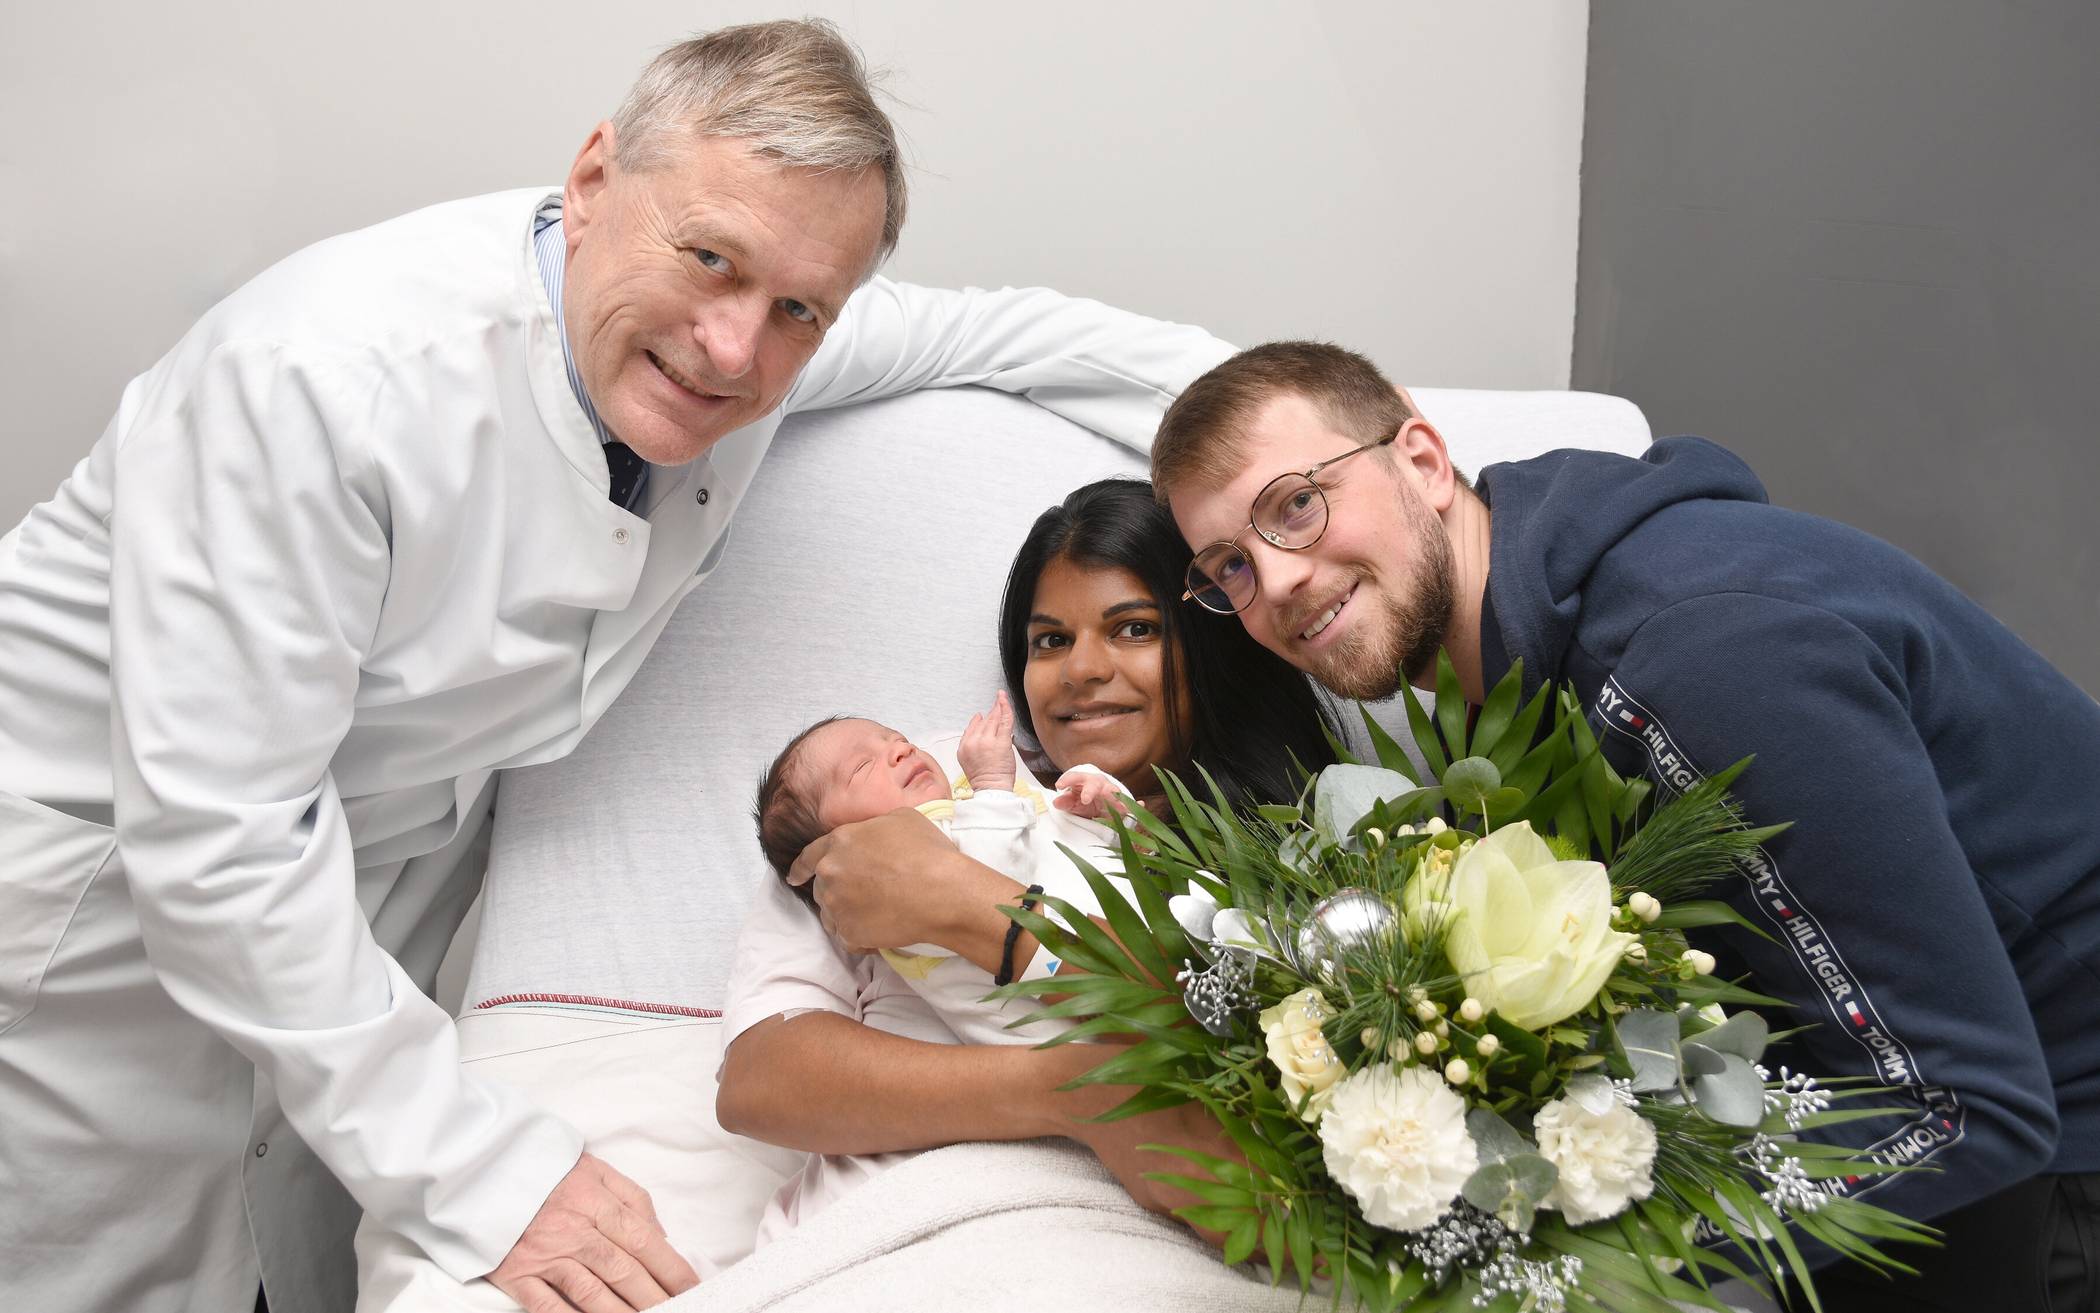  Professor Jürgen Hucke, Chefarzt der Klinik für Frauenheilkunde und Geburtshilfe der Bethesda Klinik, gratuliert mit einem Blumenstrauß den frischgebackenen Eltern herzlich zur Geburt des kleinen Maximilian. 